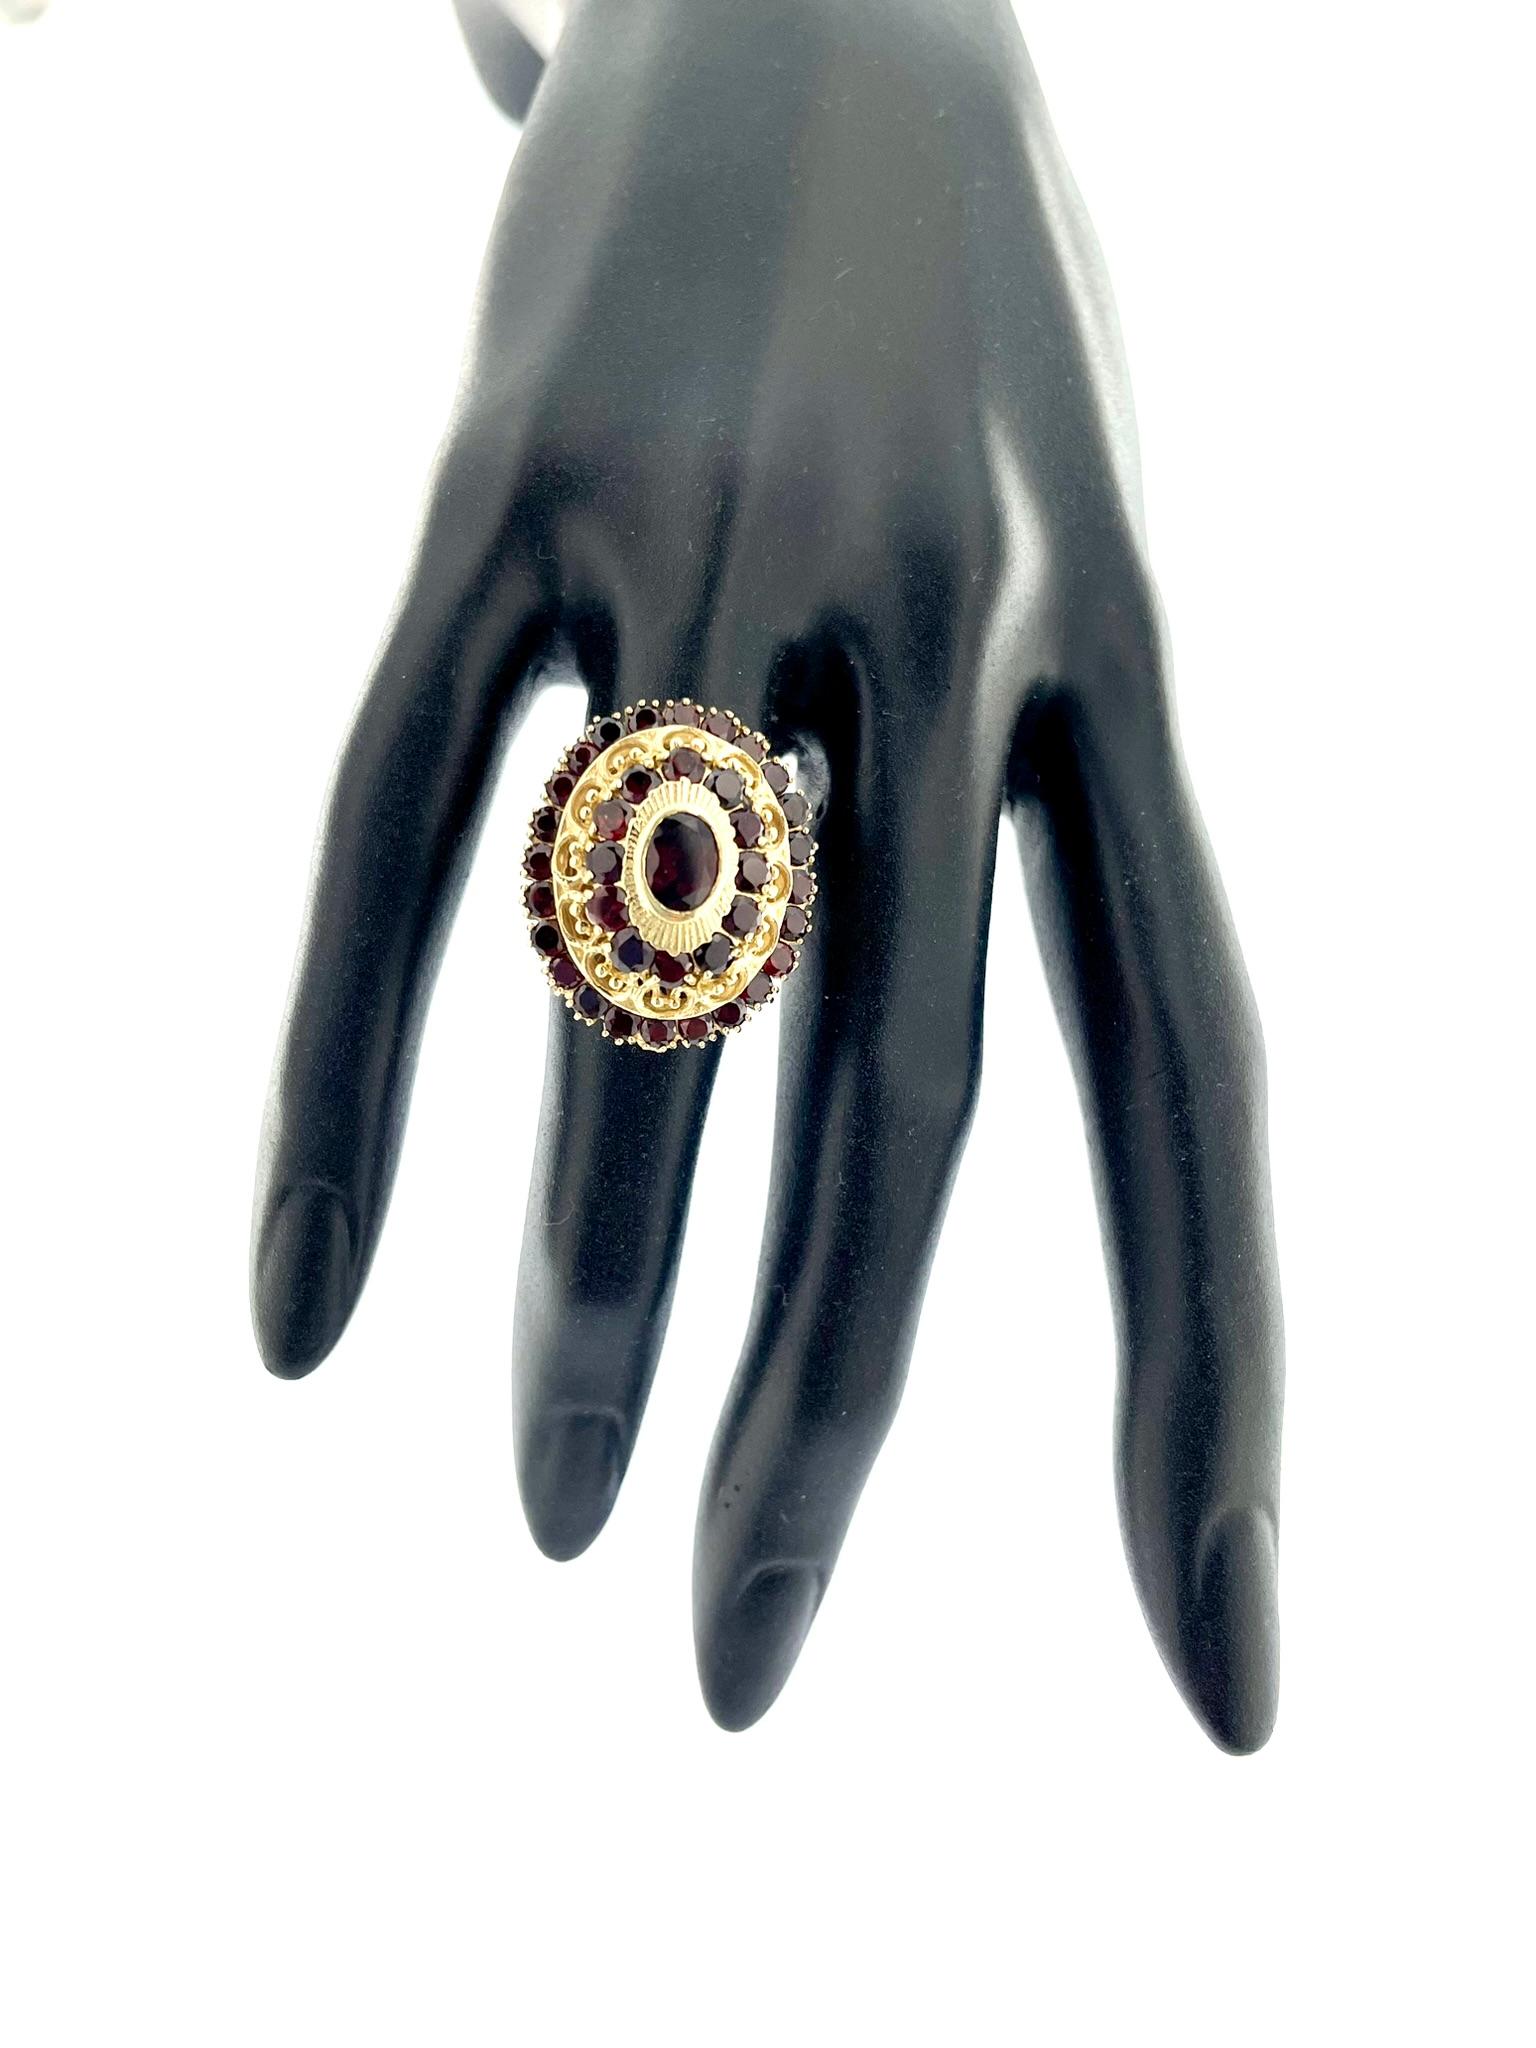 Dieser exquisite Belle-Époque-Ring ist ein meisterhaftes Kunstwerk, das aus strahlendem 18-karätigem Gelbgold gefertigt ist. Der Ring zeigt ein zeitloses und elegantes Prinzessinnen-Design, das an die Belle-Époque-Zeit erinnert und sich durch die